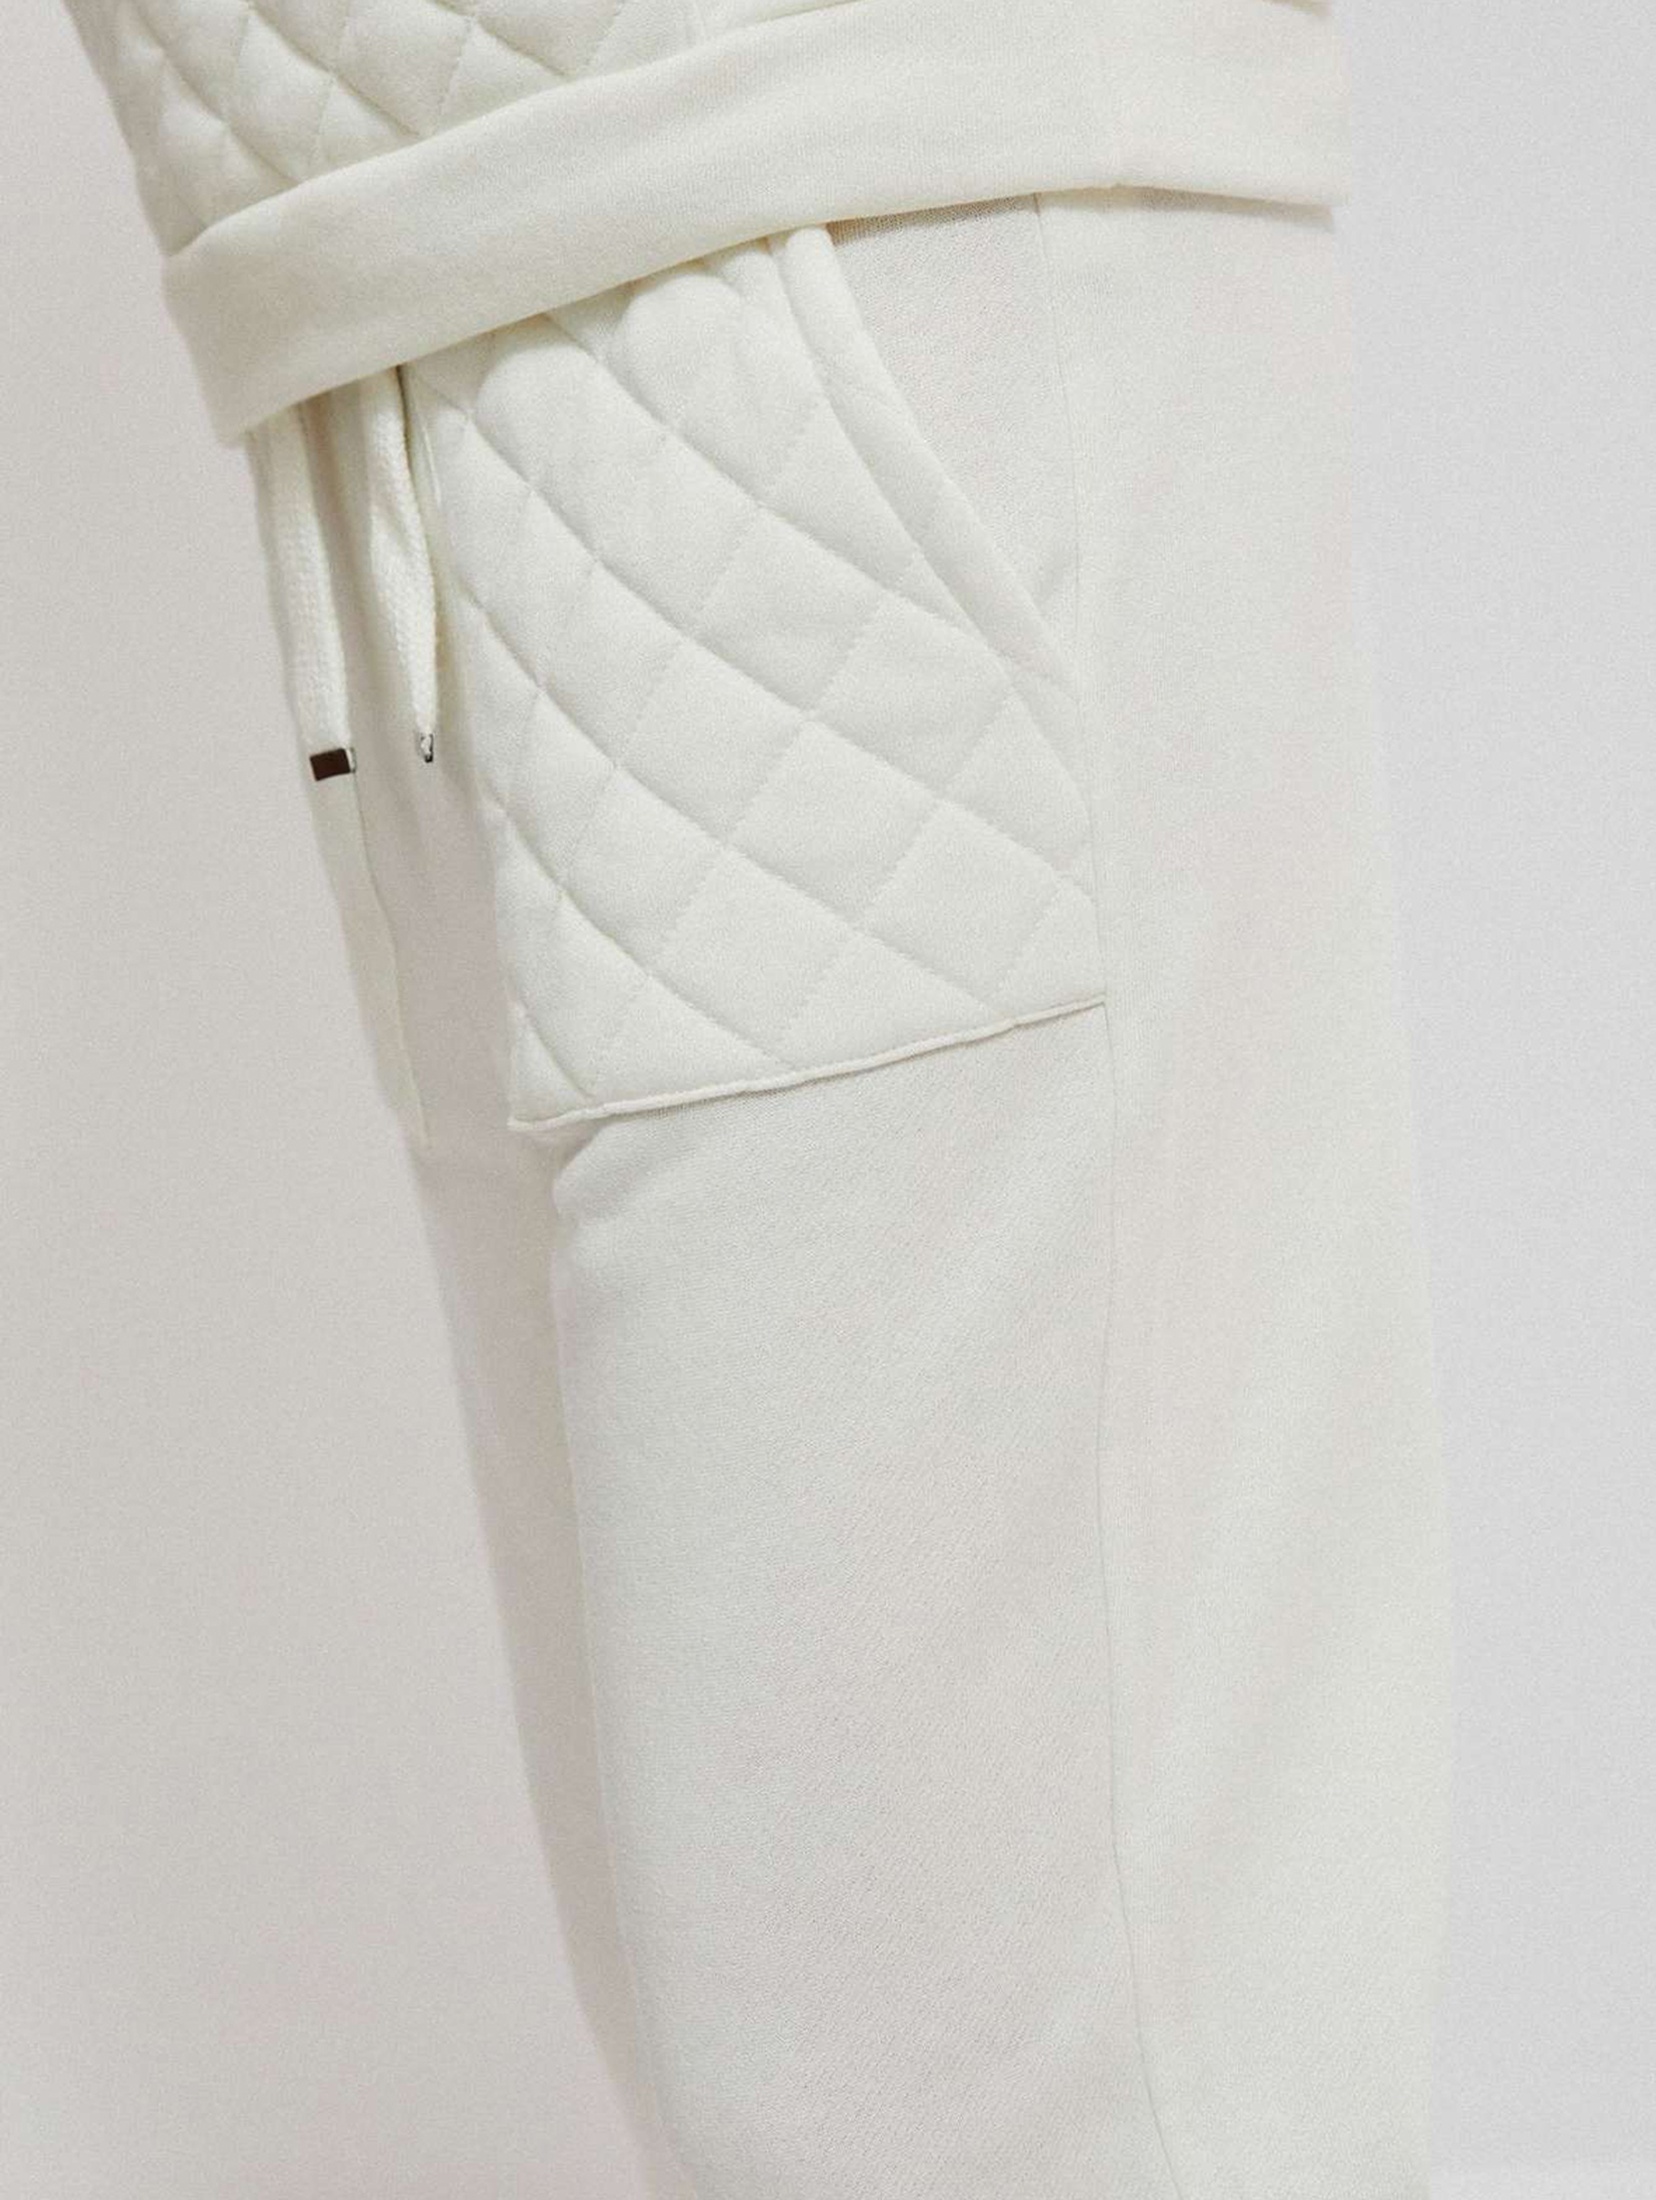 Spodnie dresowe damskie białe